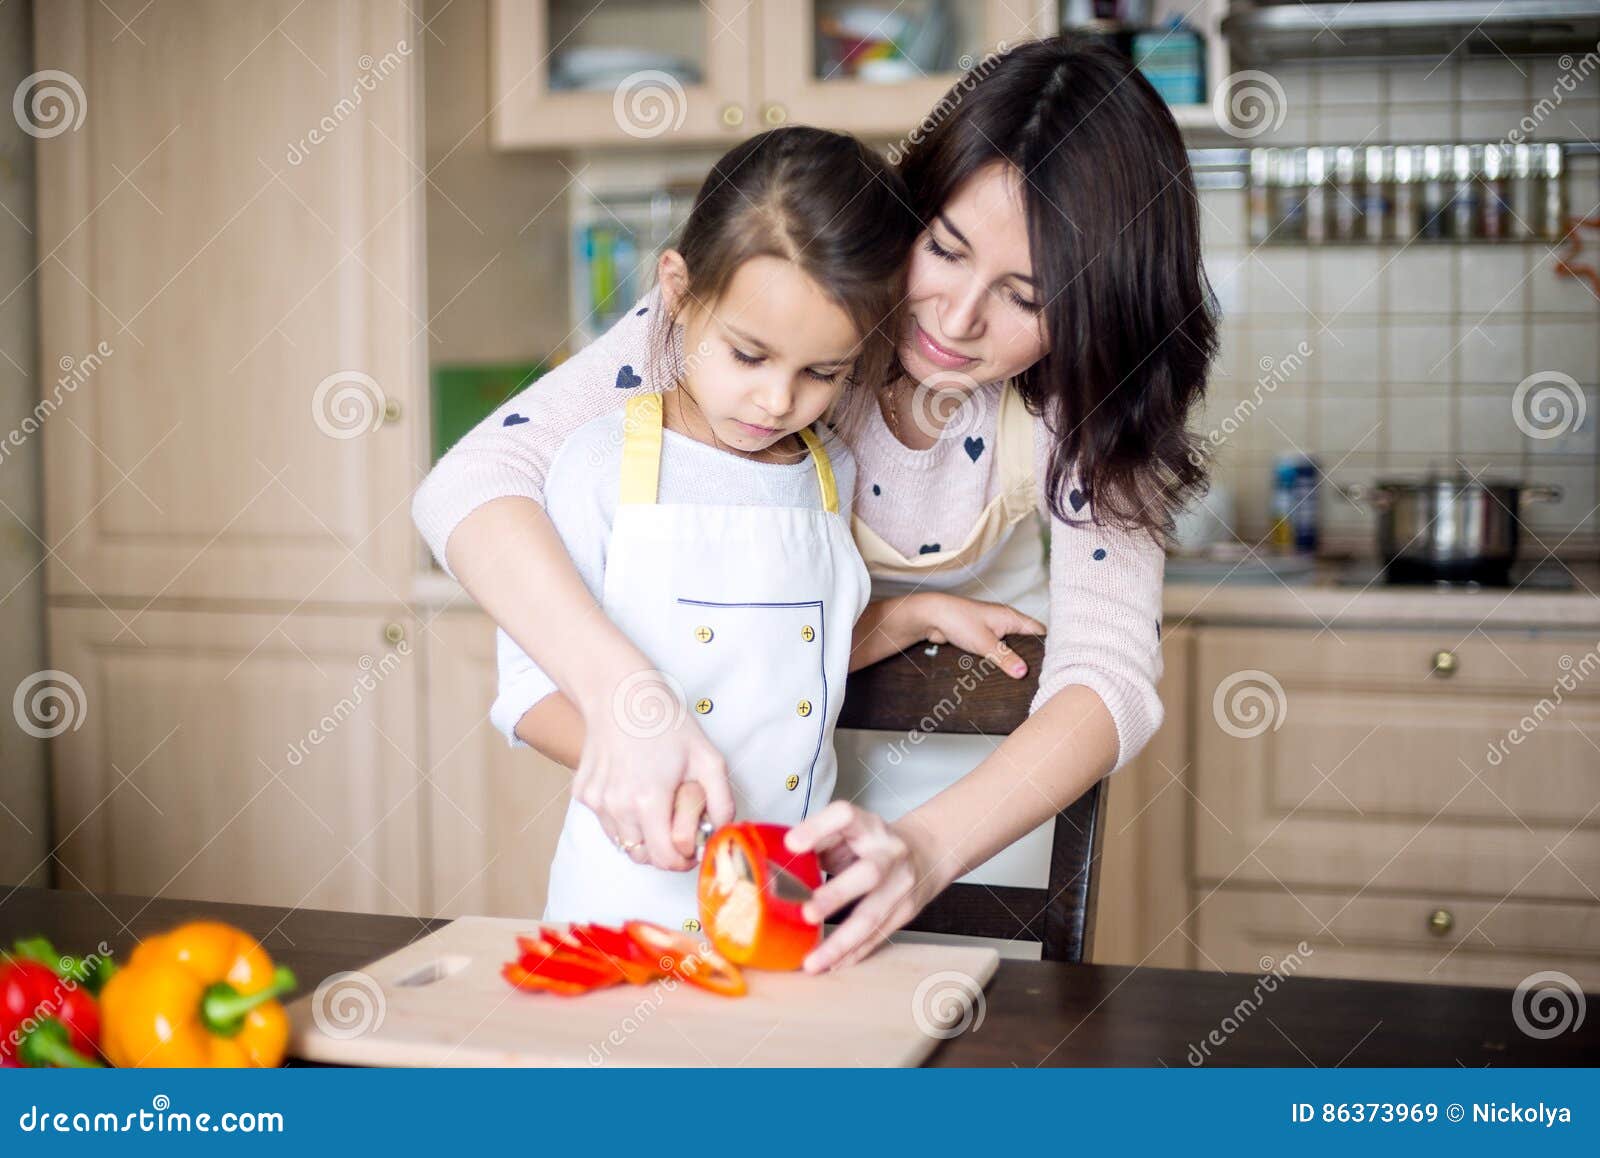 Мама с дочкой на кухне. Мама с дочкой готовят. Готовим для детей. Дочка готовит. Фотосессия на кухне с мамой.